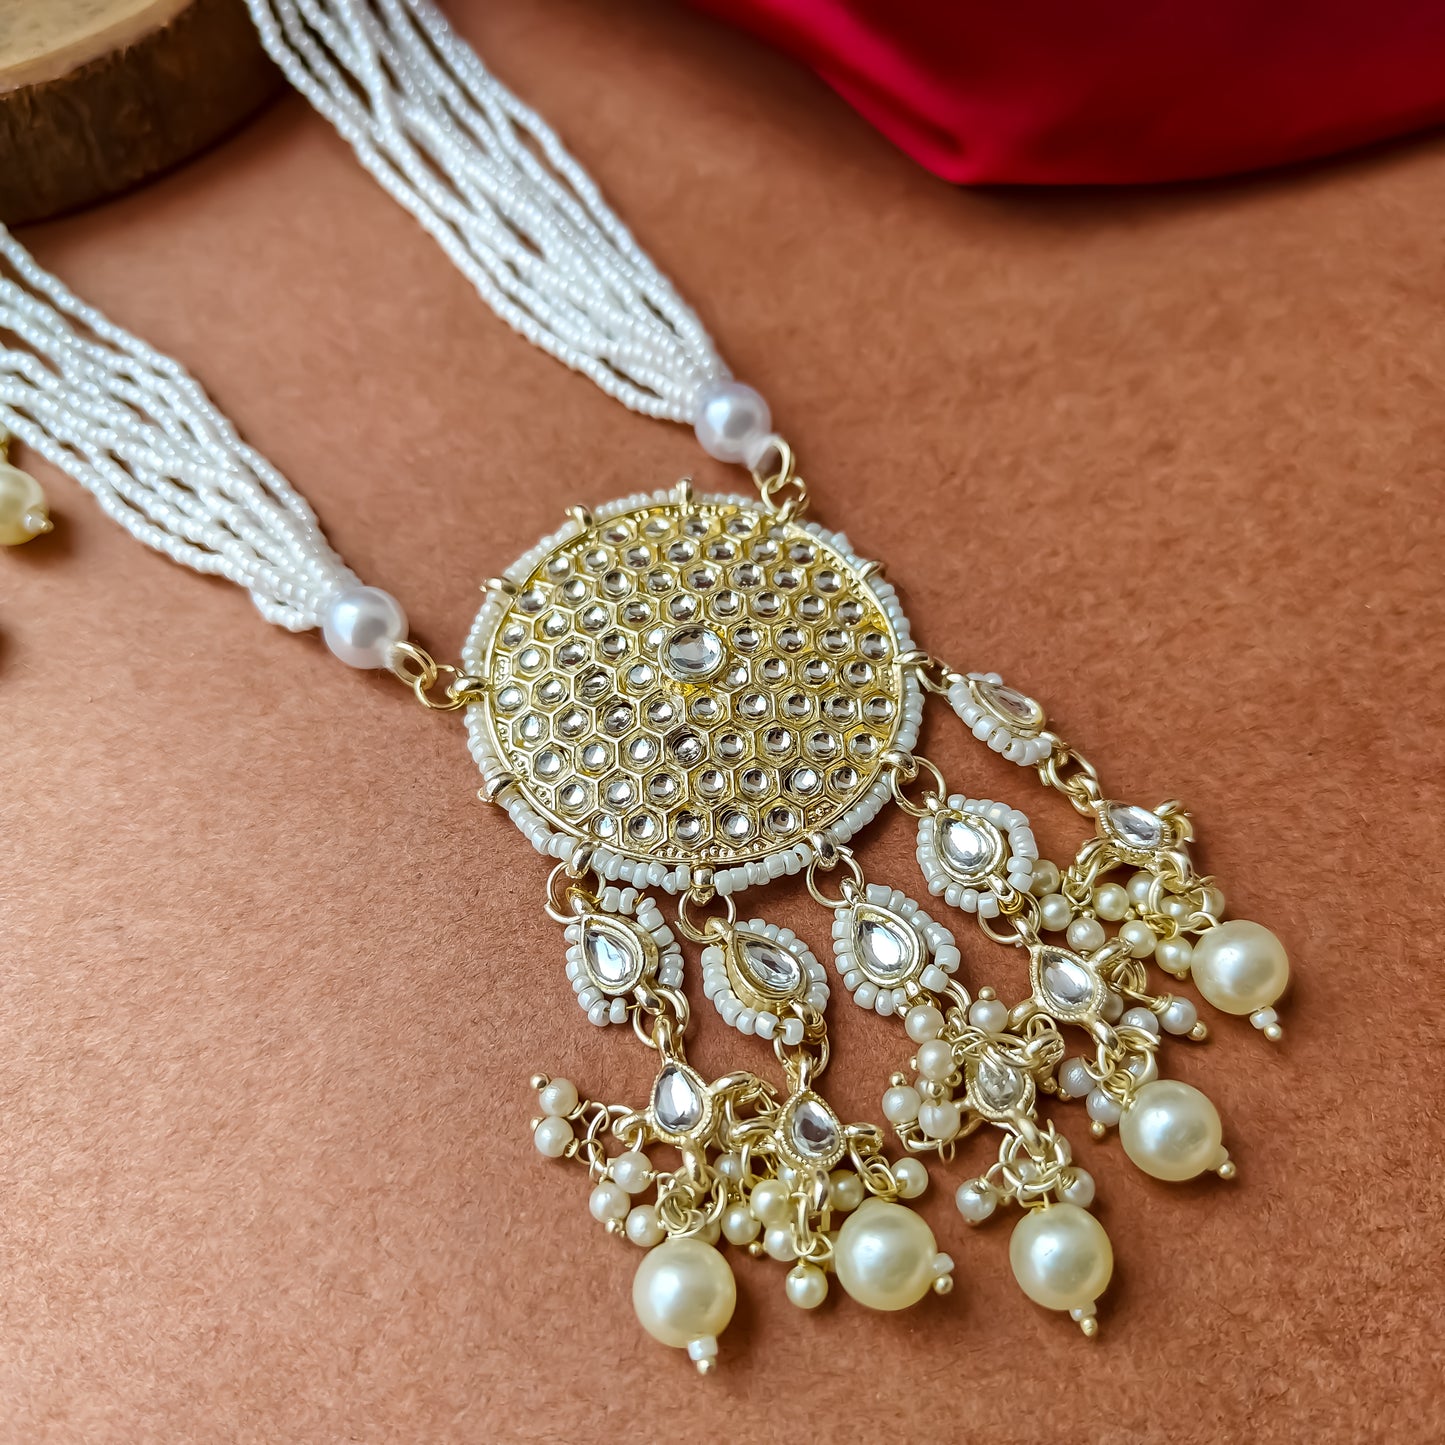 Soumya Golden Rani Haar Necklace Set with Earrings